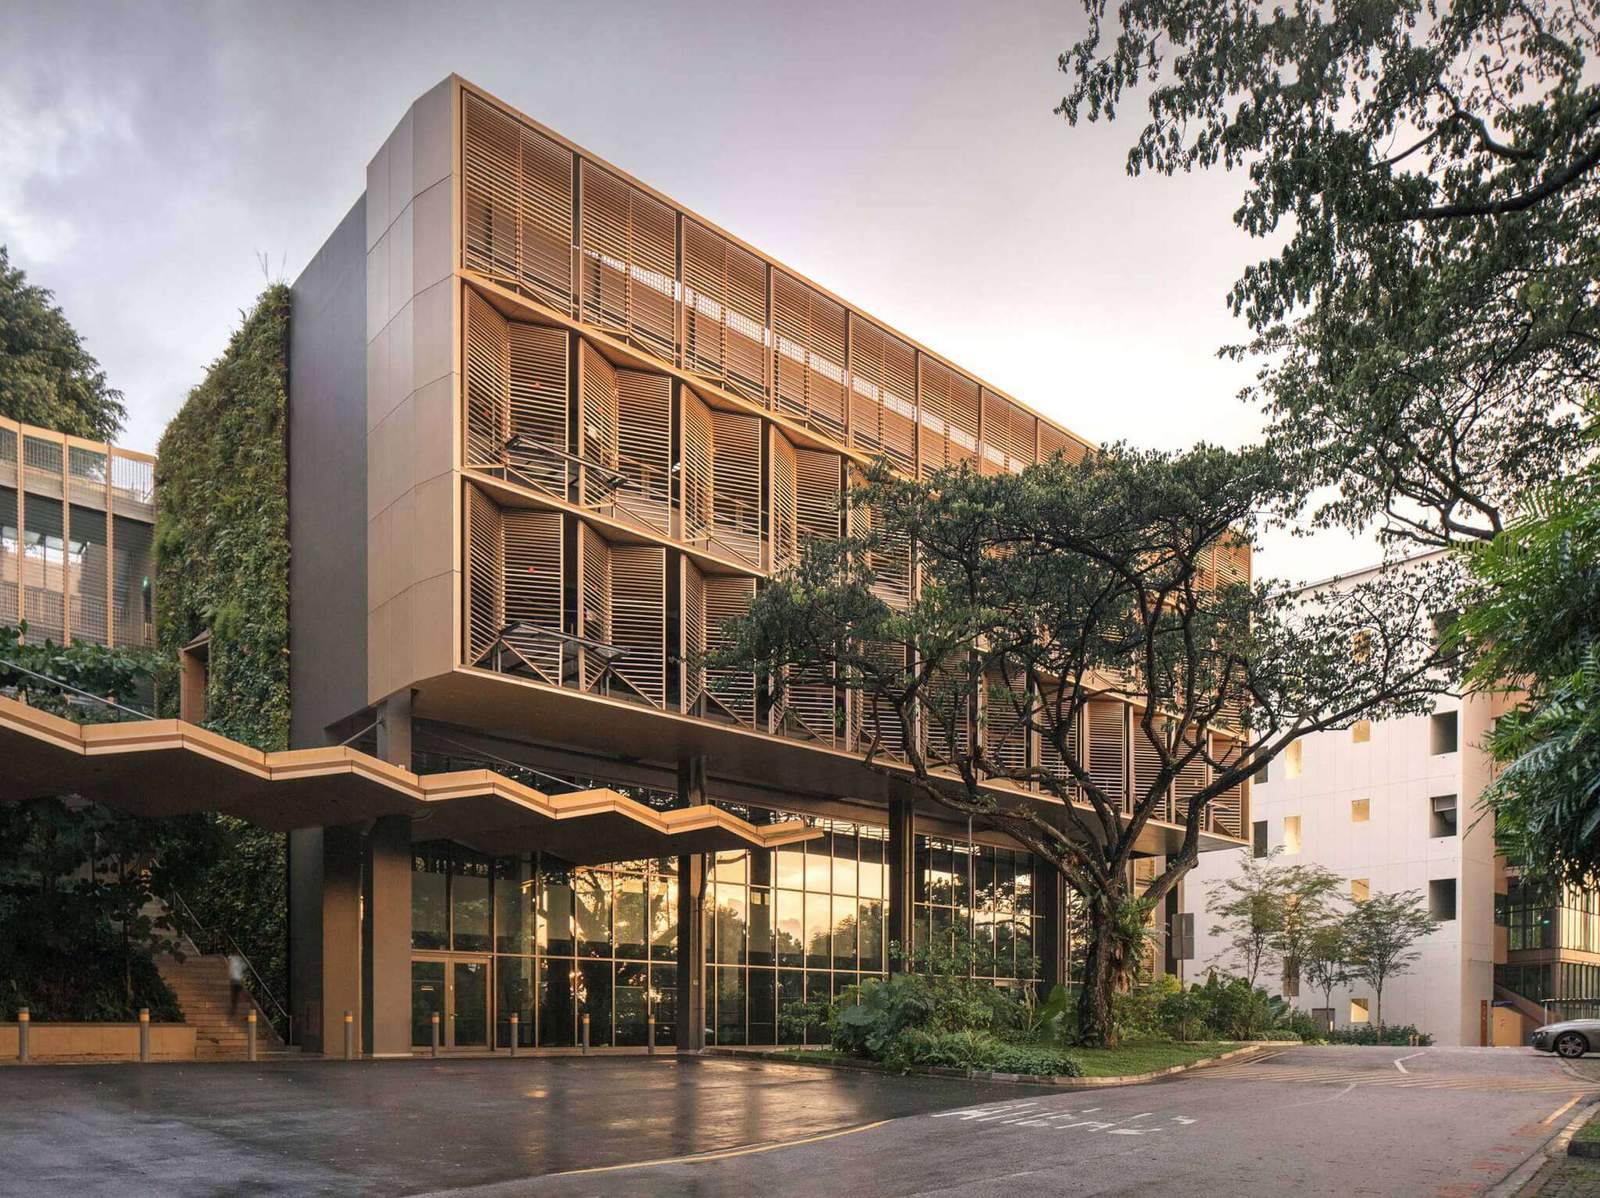 شاشة ألومنيوم مظللة بكلية التصميم والبيئة بجامعة سنغافورة الوطنية